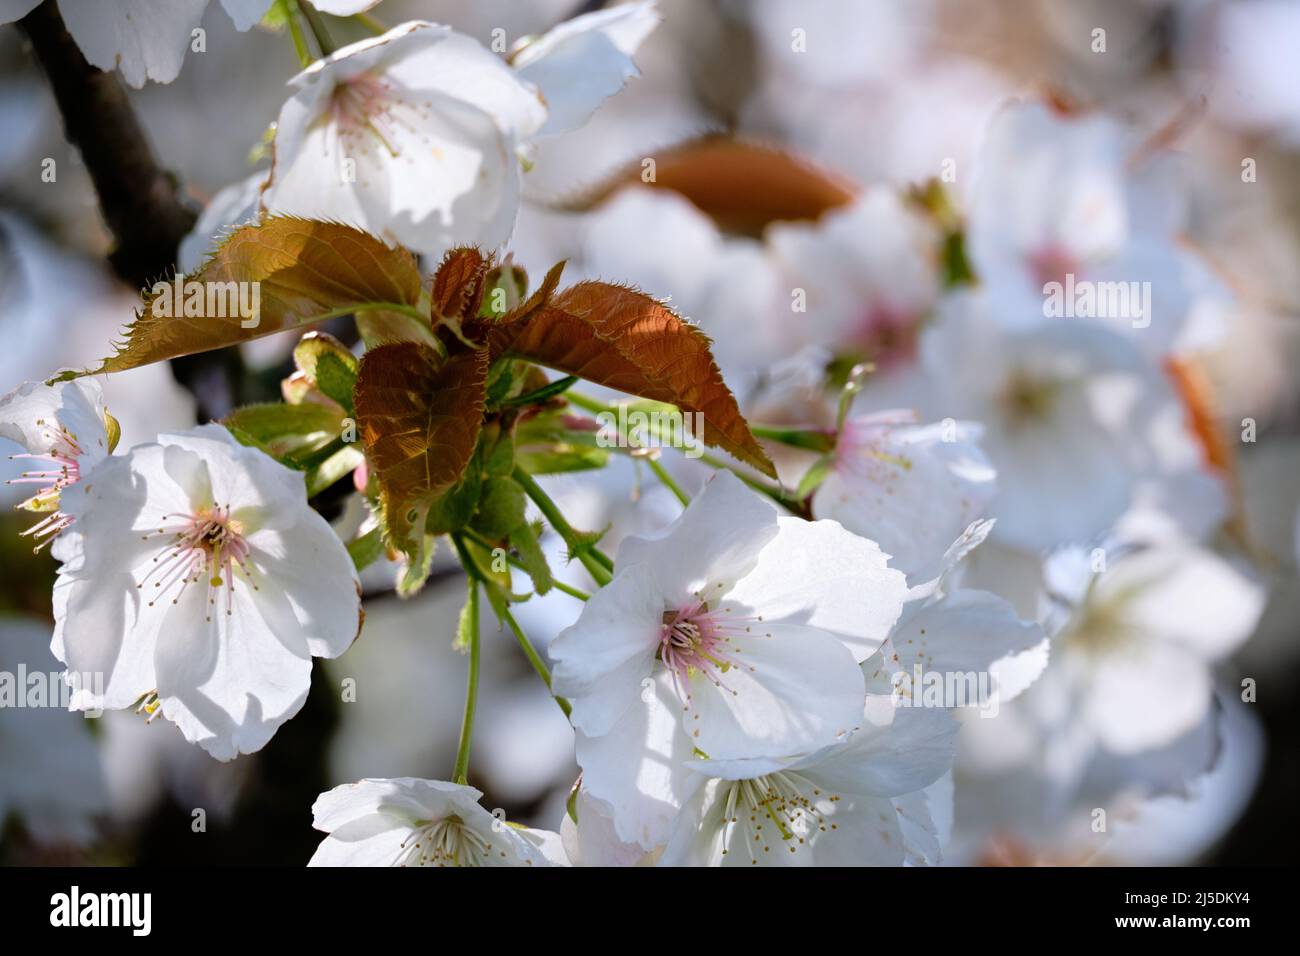 Primer plano del nuevo crecimiento de hojas rojas y verdes rodeado de delicadas flores de cereza blanca y rosa Foto de stock